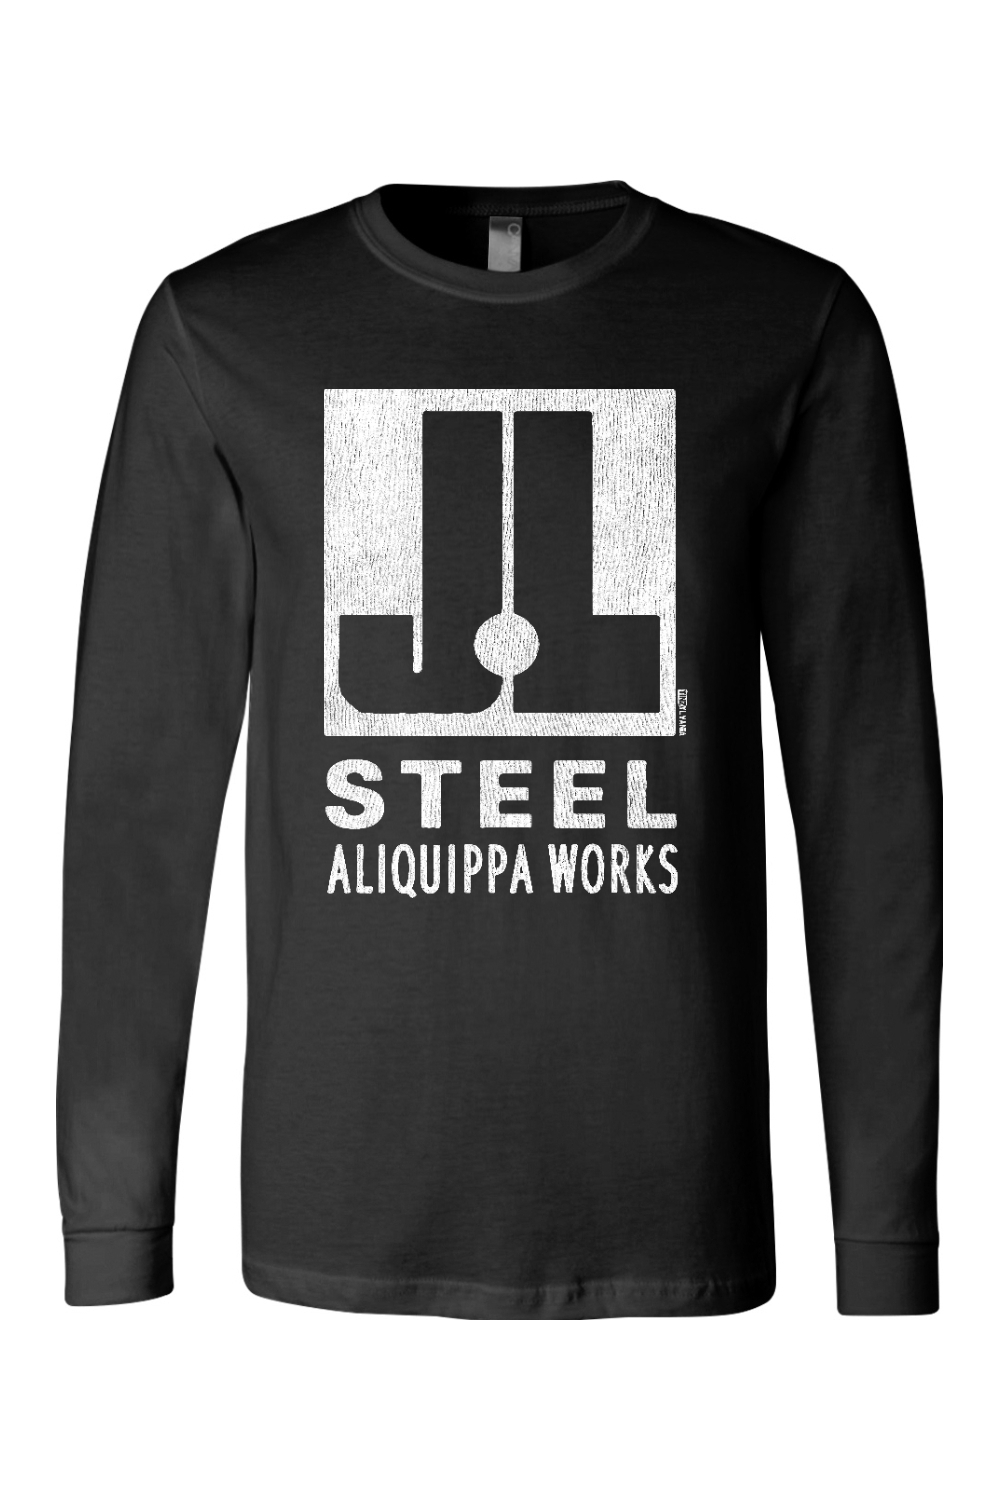 J&L Steel - Aliquippa Works - Long Sleeve Tee - Yinzylvania